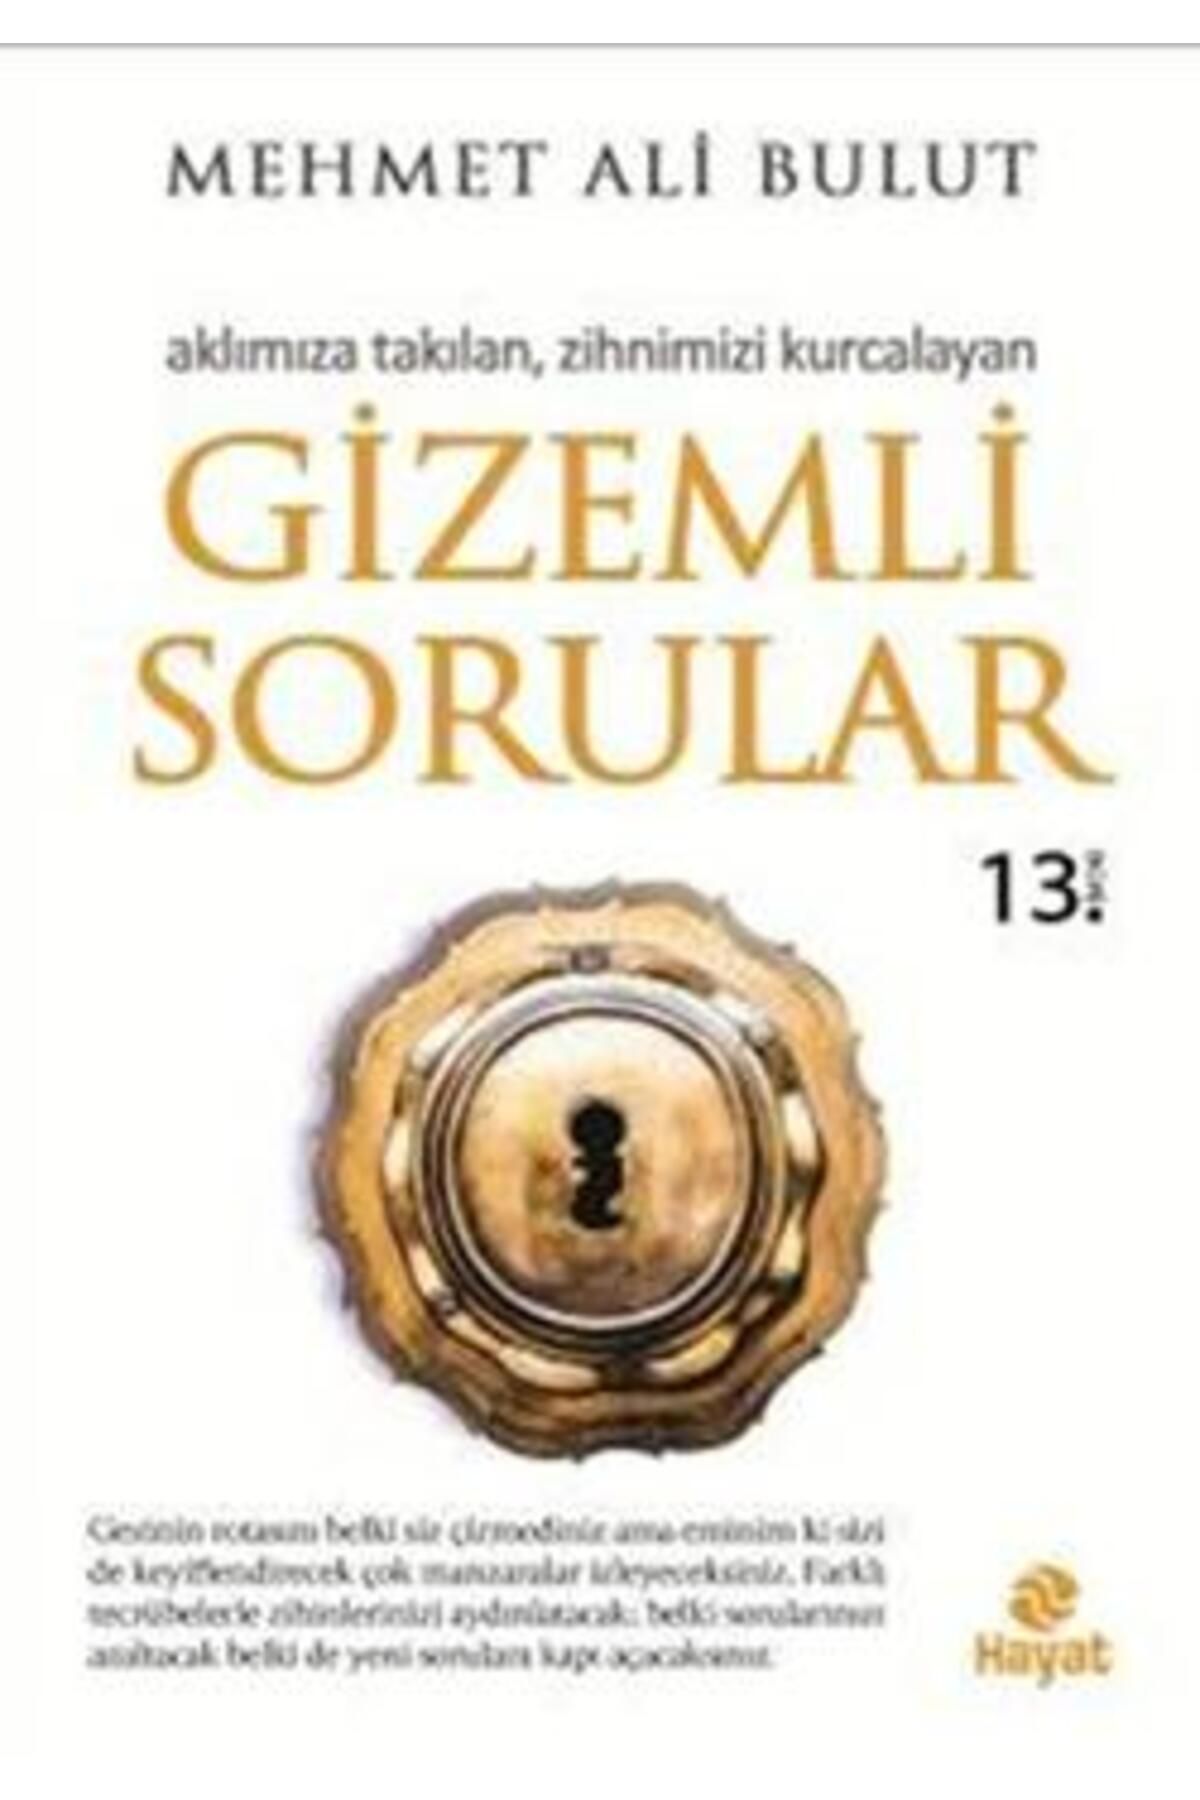 Hayat Yayınları Gizemli Sorular kitabı - Mehmet Ali Bulut - Hayat Yayınları